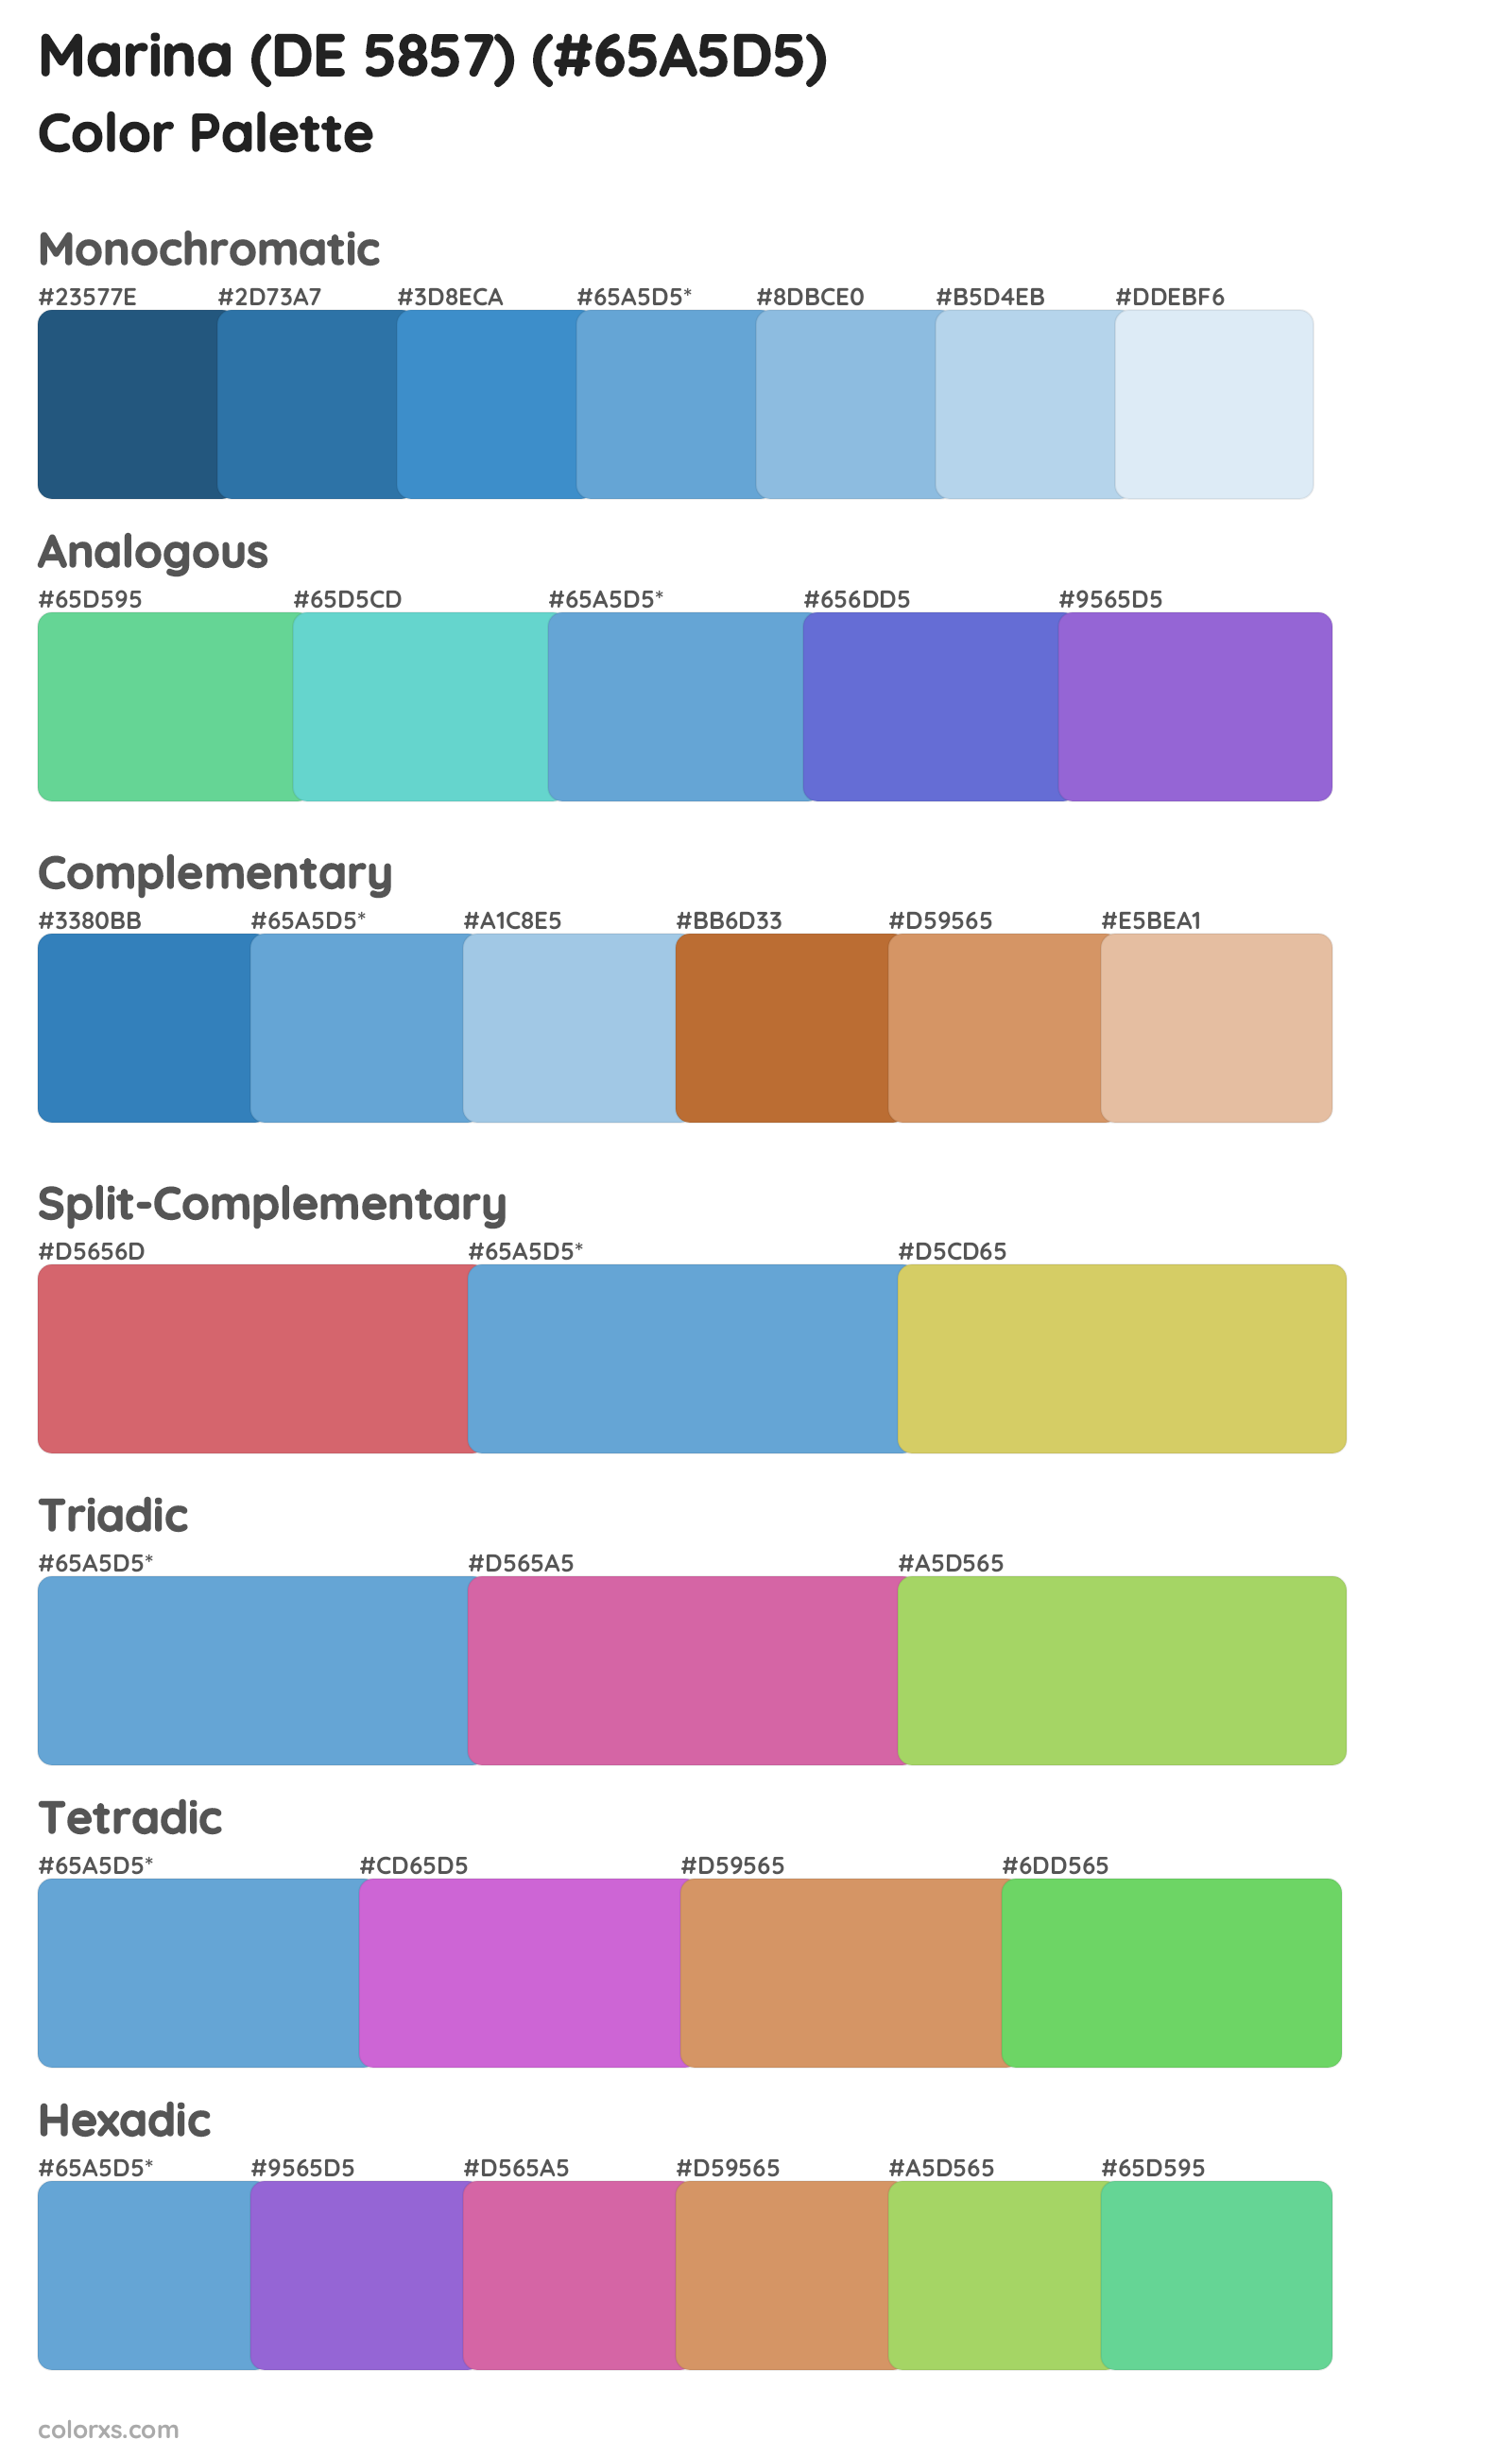 Marina (DE 5857) Color Scheme Palettes